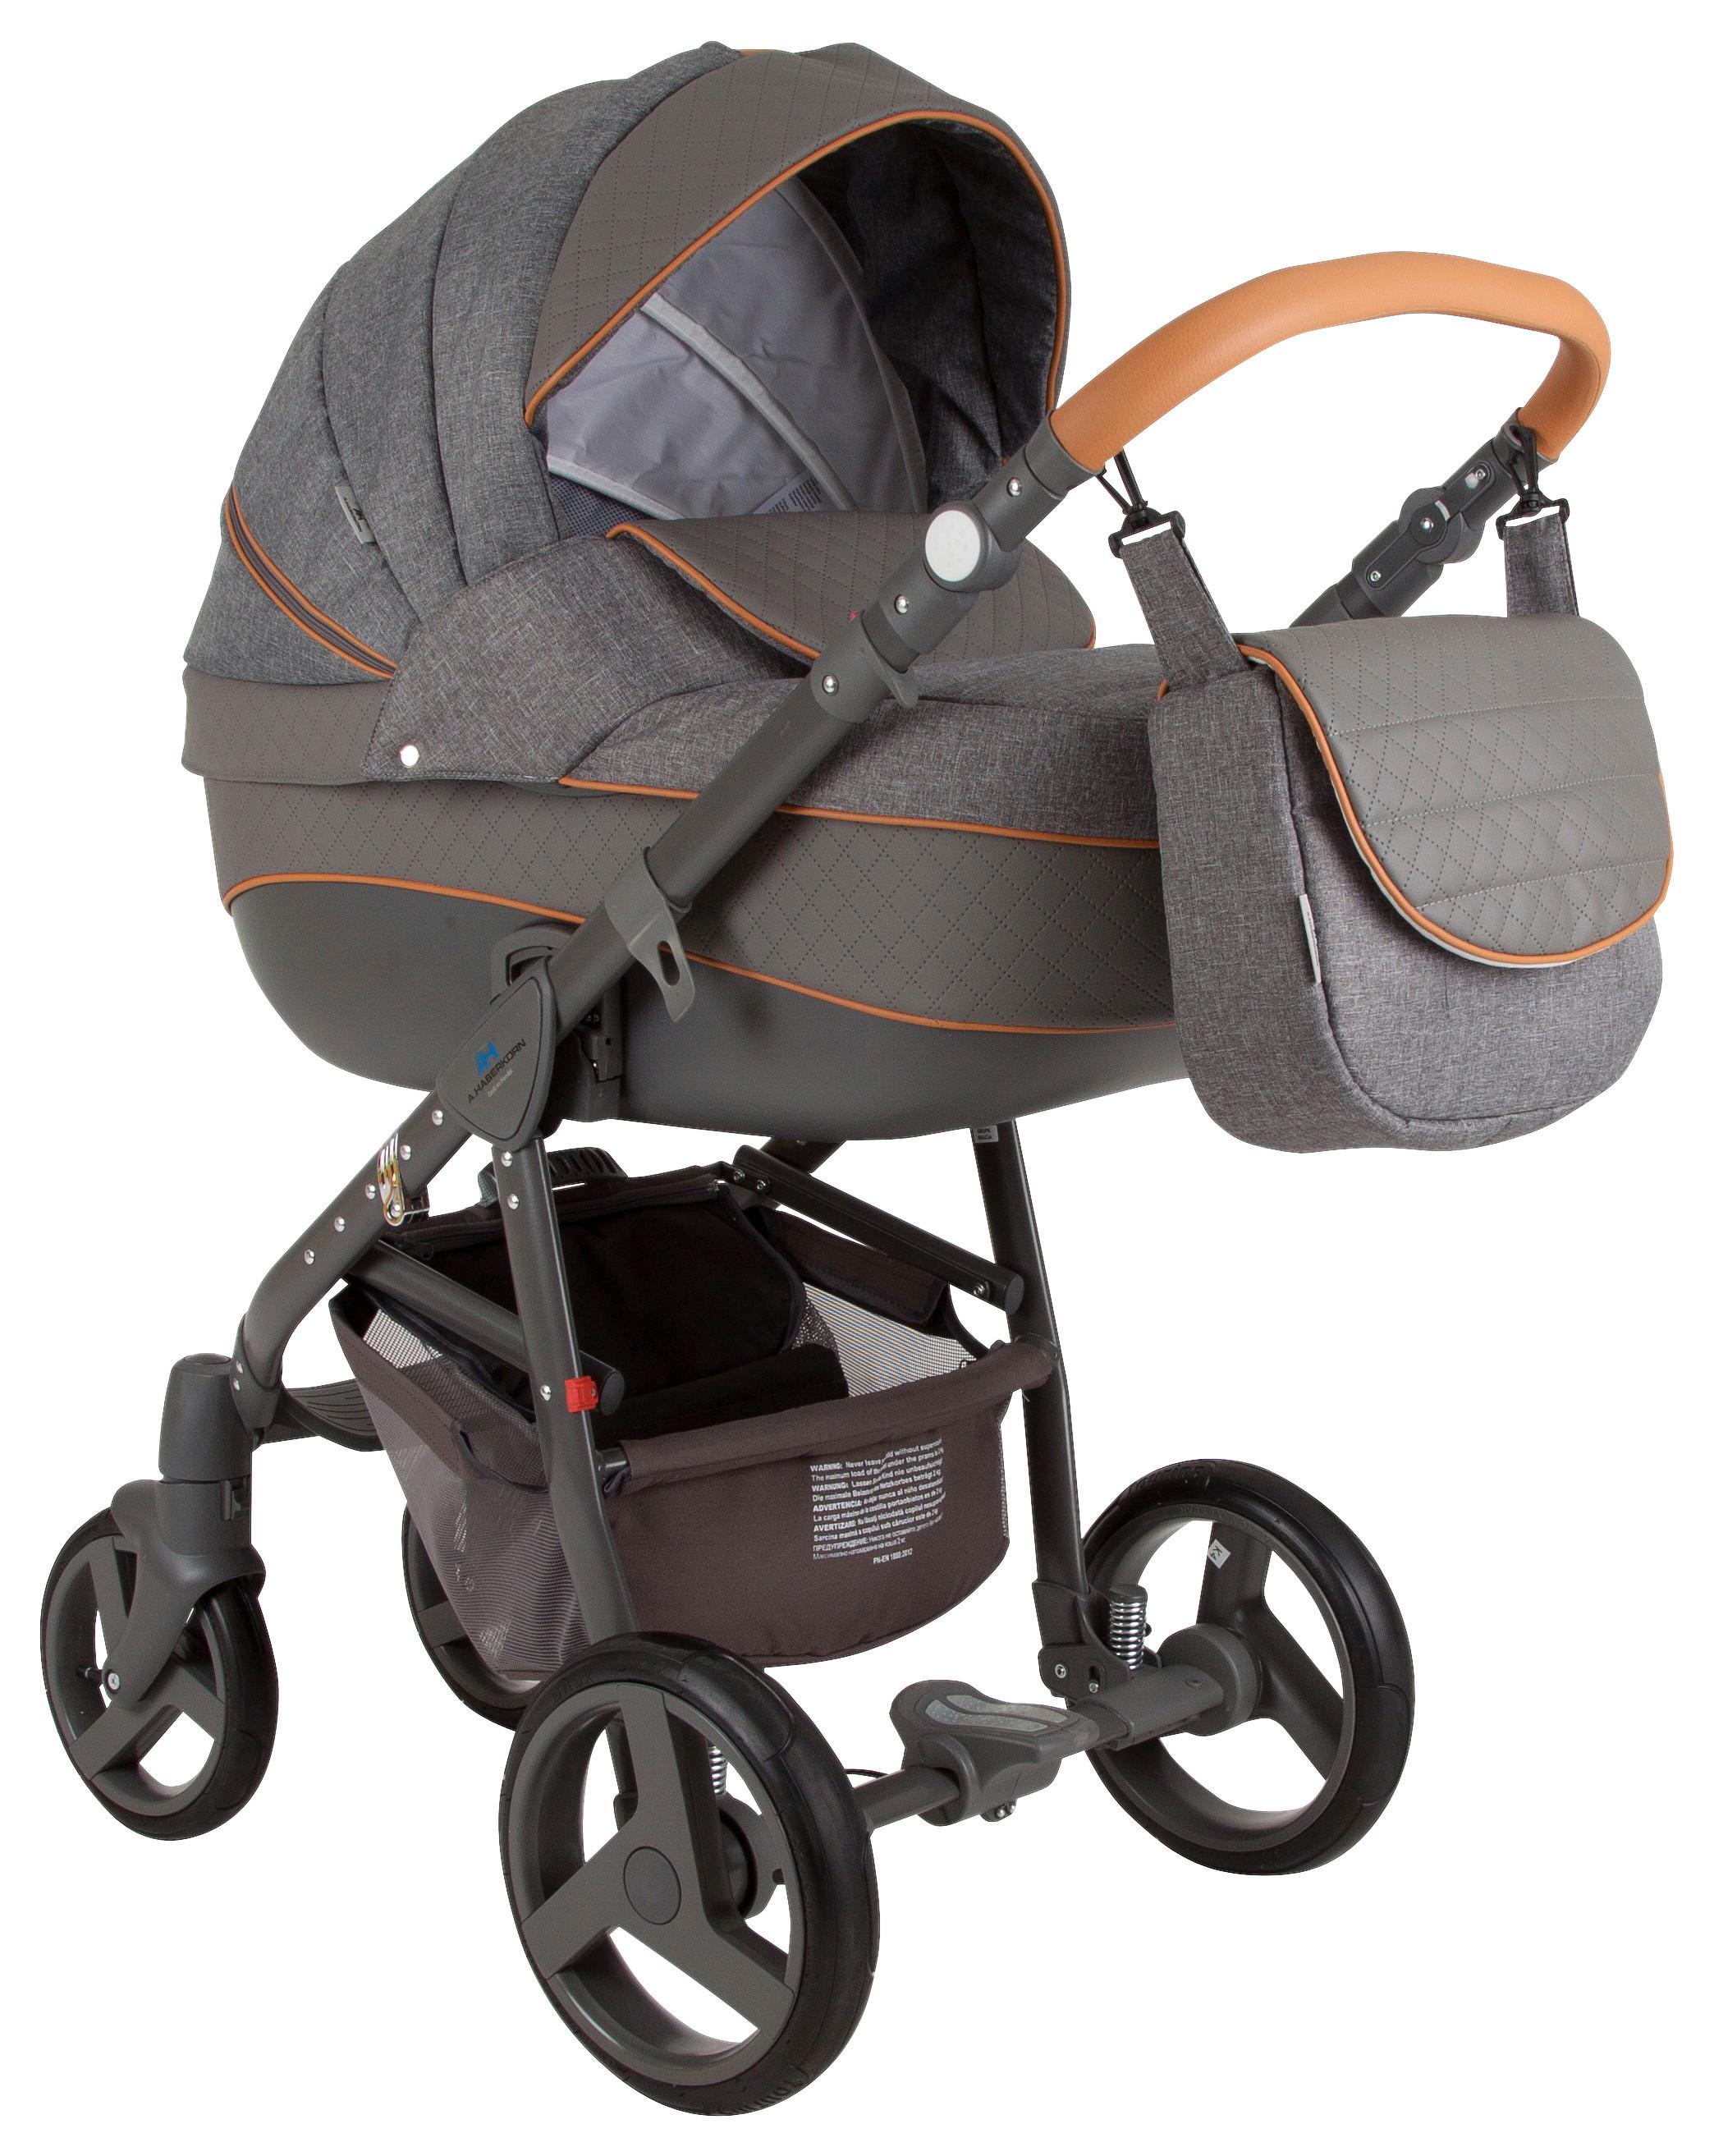 Kinderwagen Neonex Alfa mit Babywanne + Sonnenschutz - Grau, Basics, Textil/Metall (78/30/60cm)